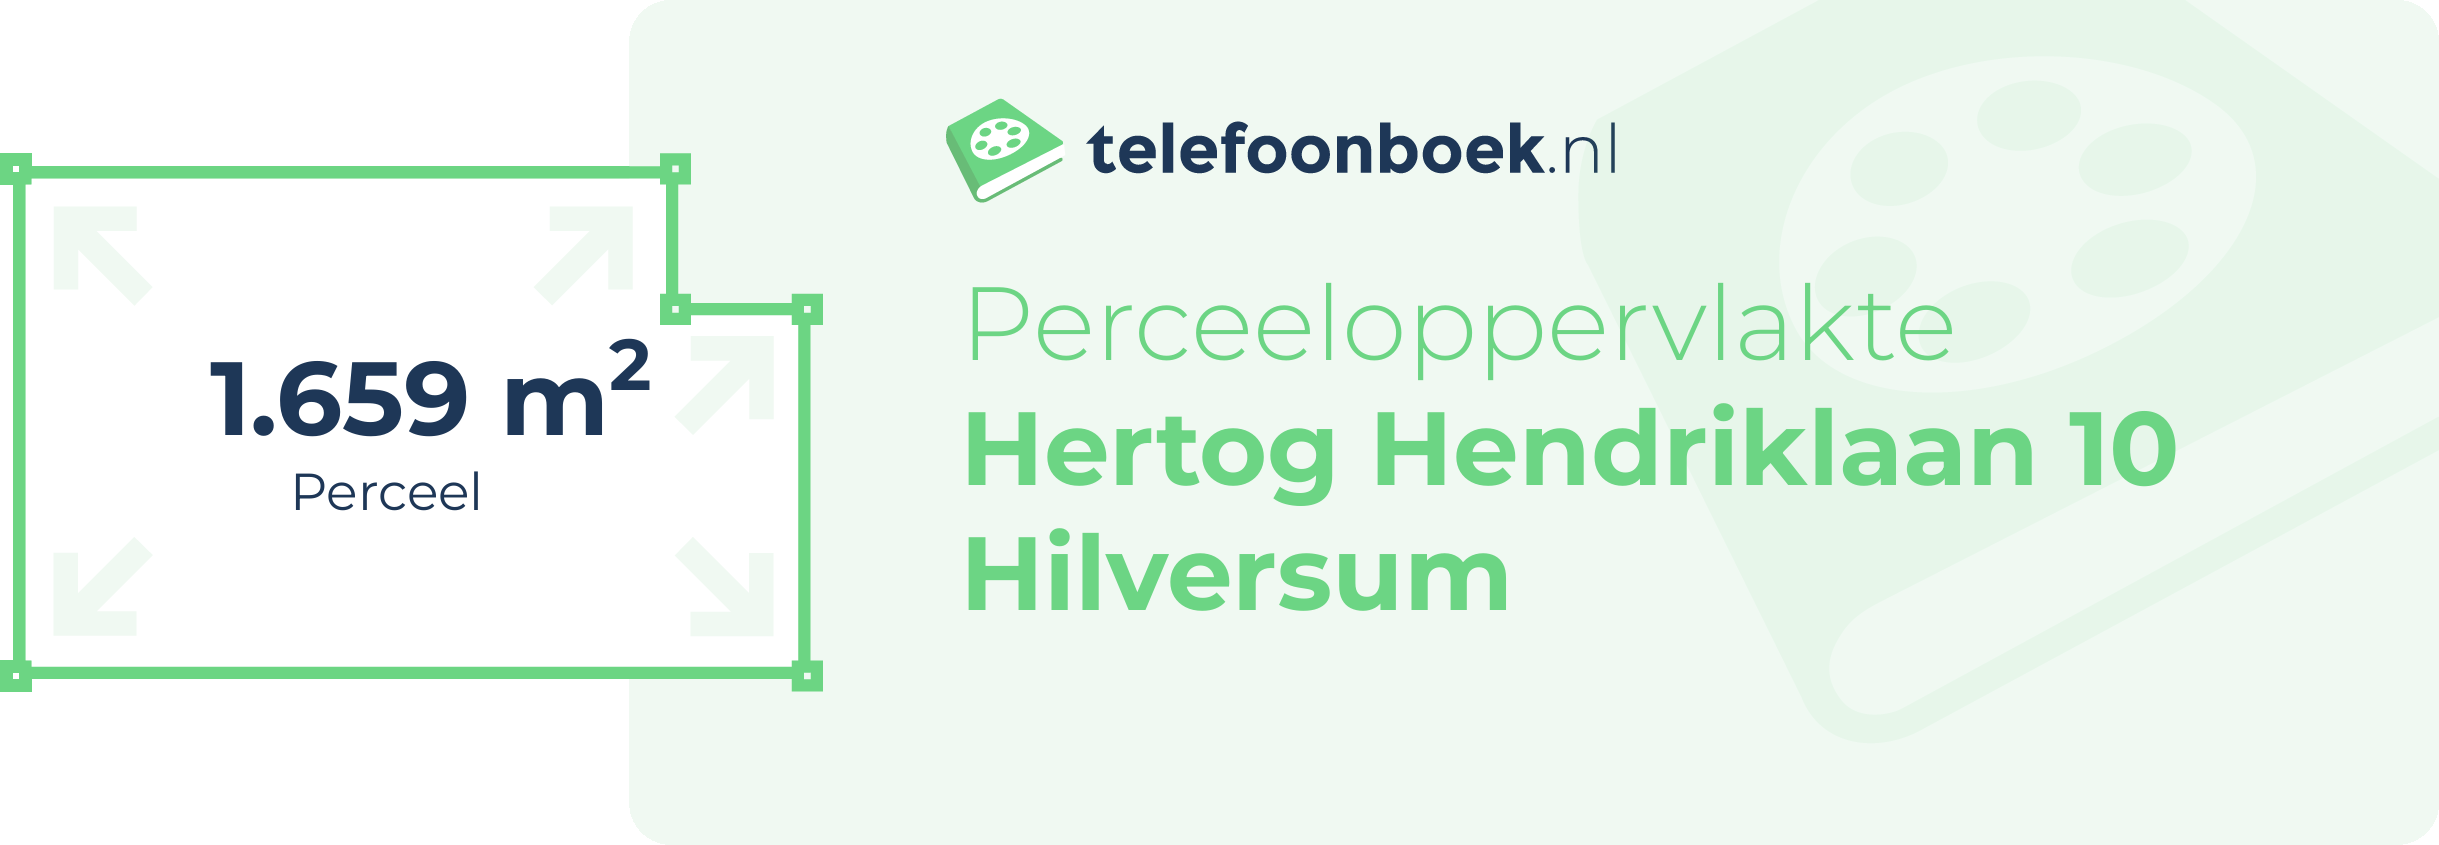 Perceeloppervlakte Hertog Hendriklaan 10 Hilversum